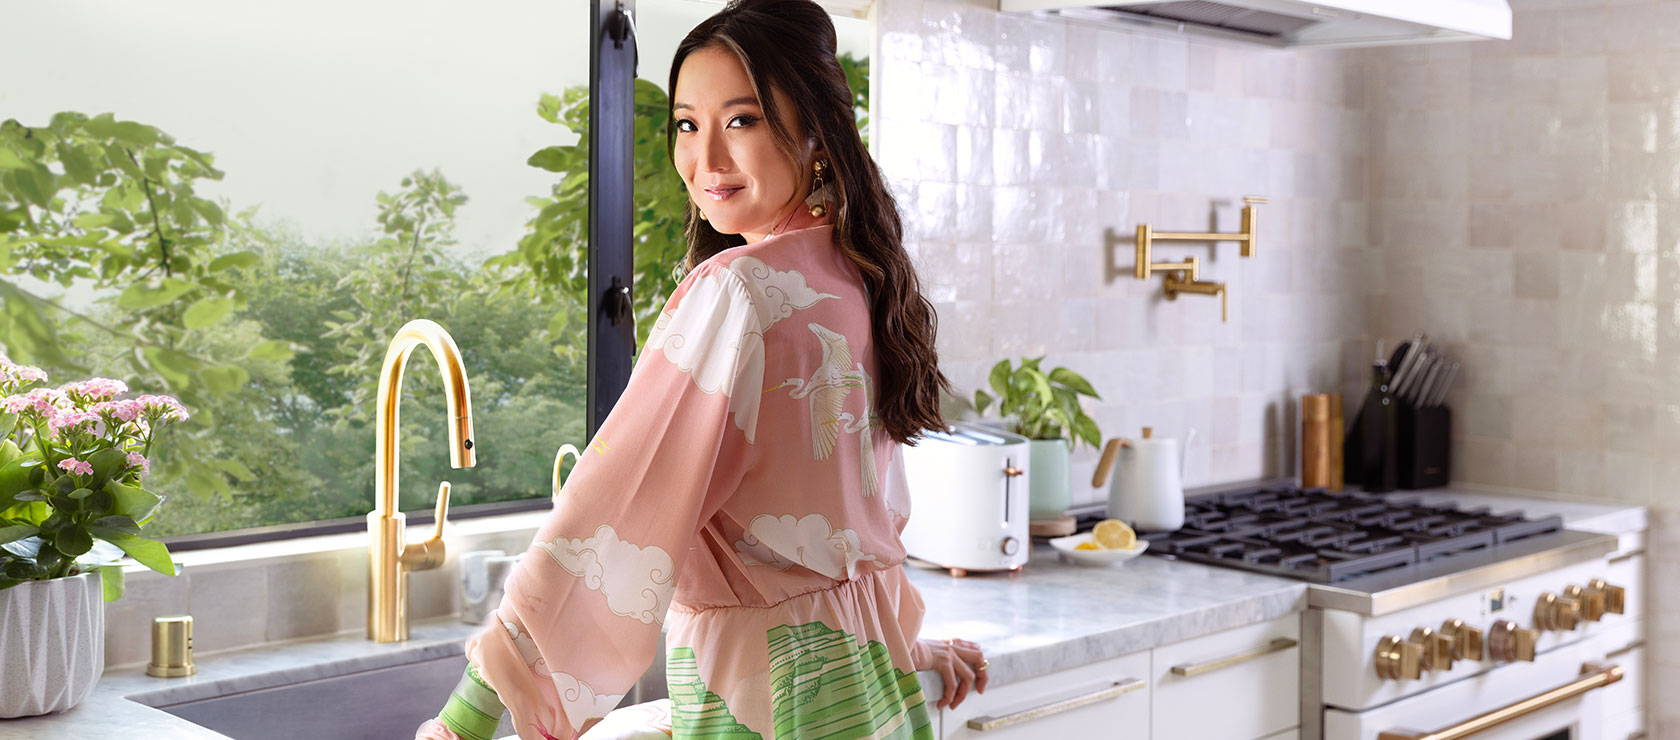 Ashley Park in her kitchen